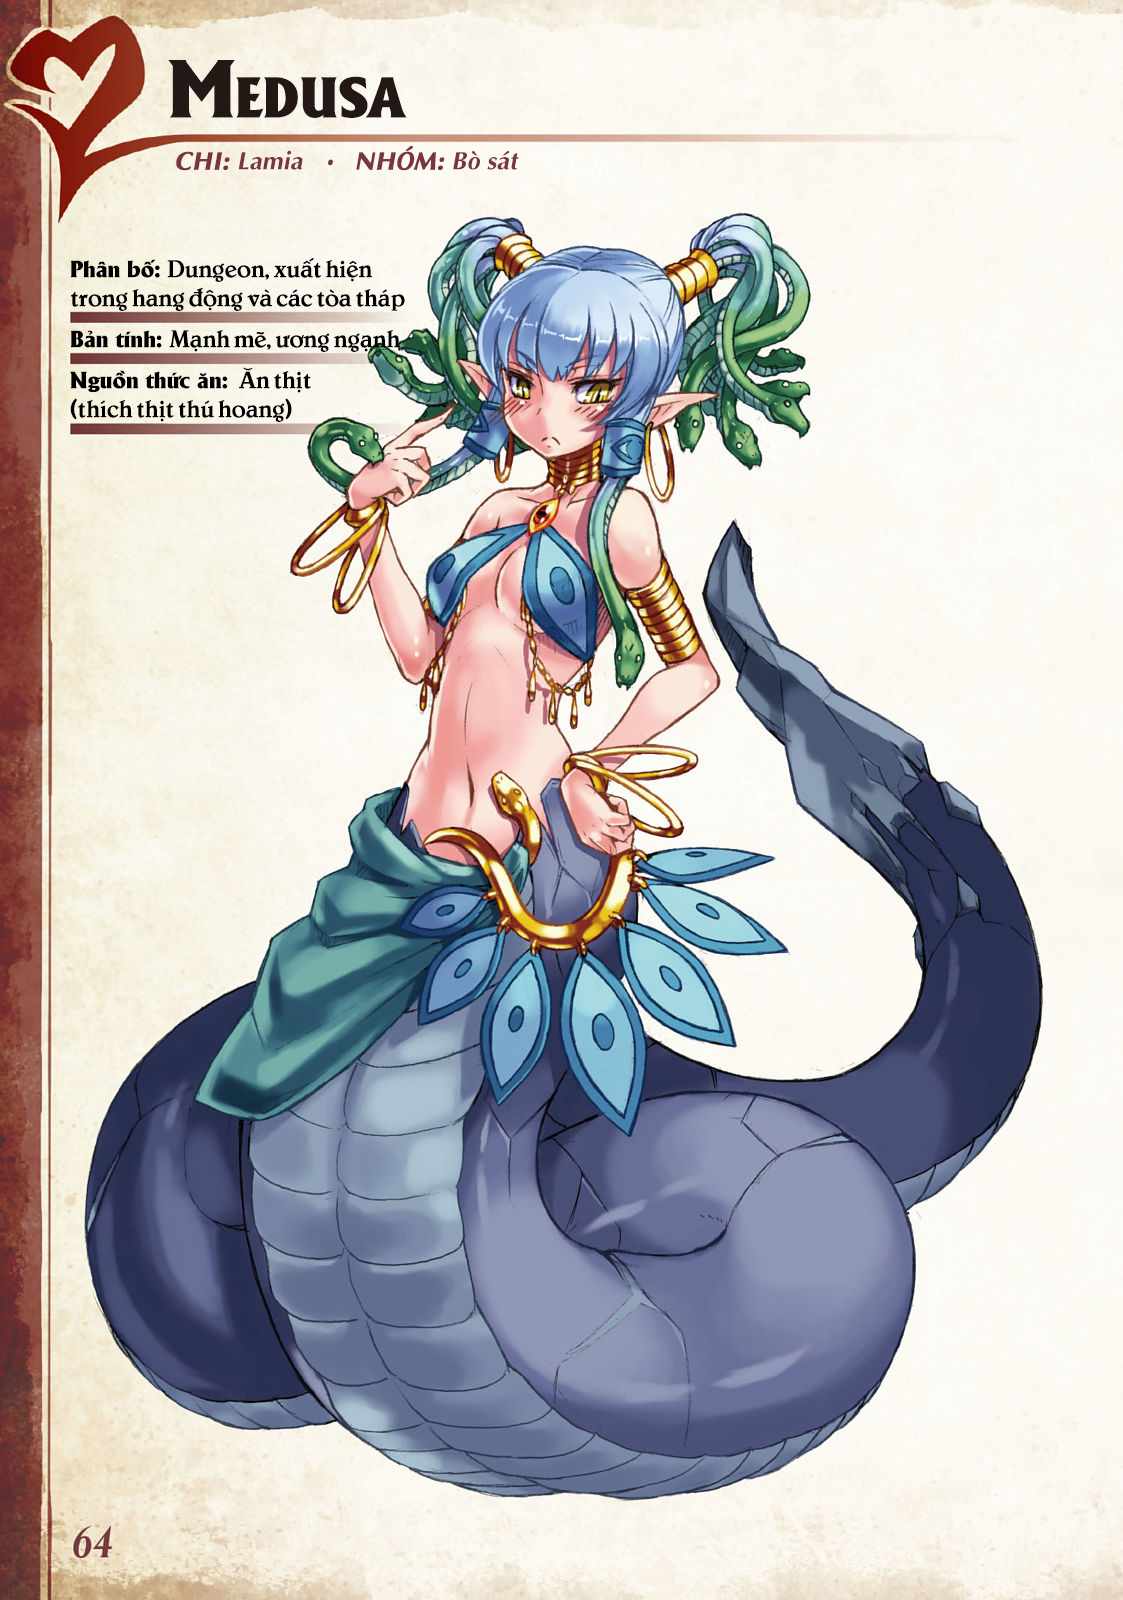 Bách khoa toàn thư Monstergirl 026: Medusa - Trang 1